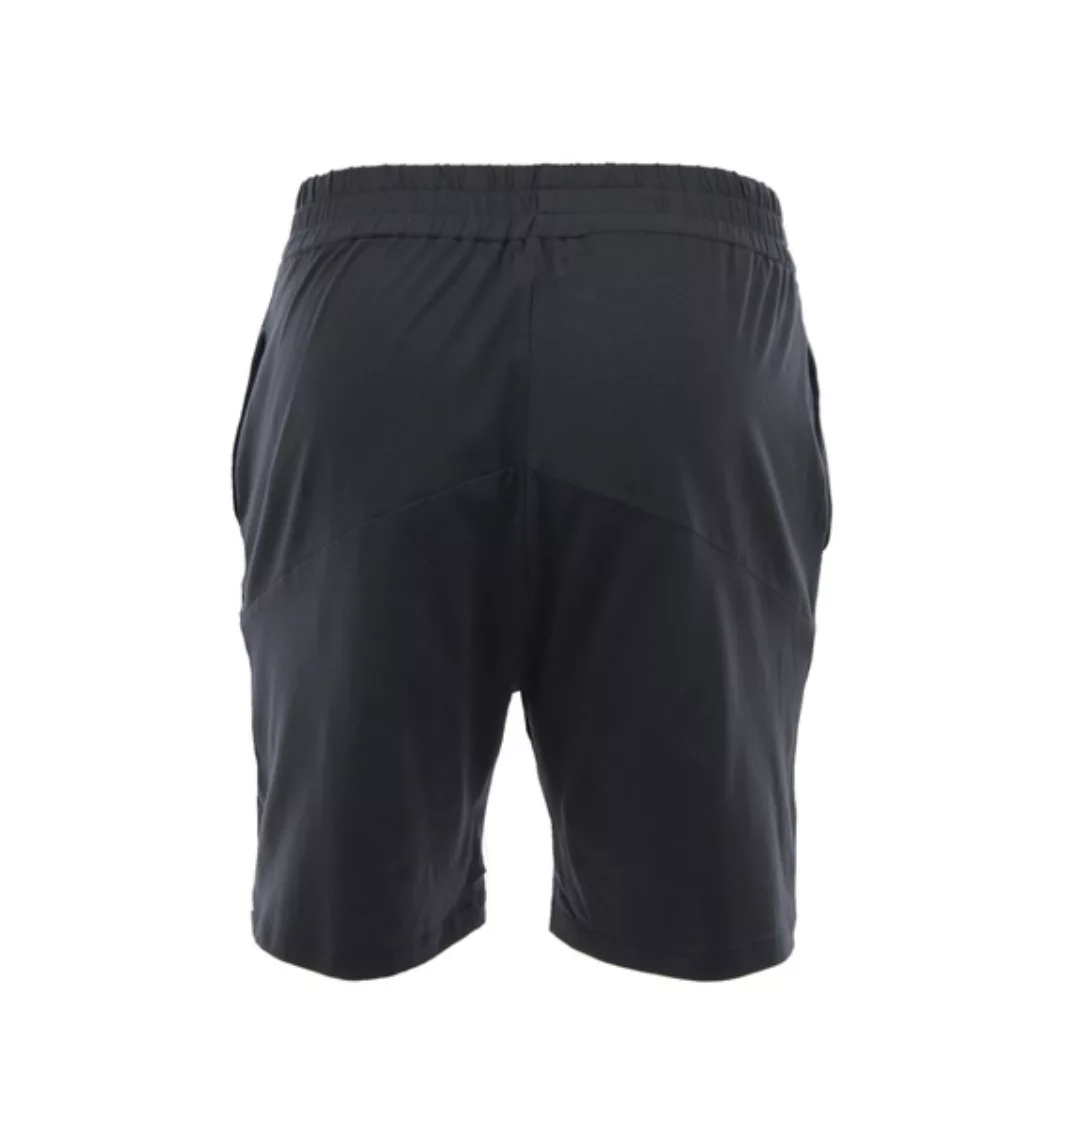 Axel Uni - Männer - Lockere Shorts Für Yoga Und Freizeit Aus Biobaumwolle günstig online kaufen